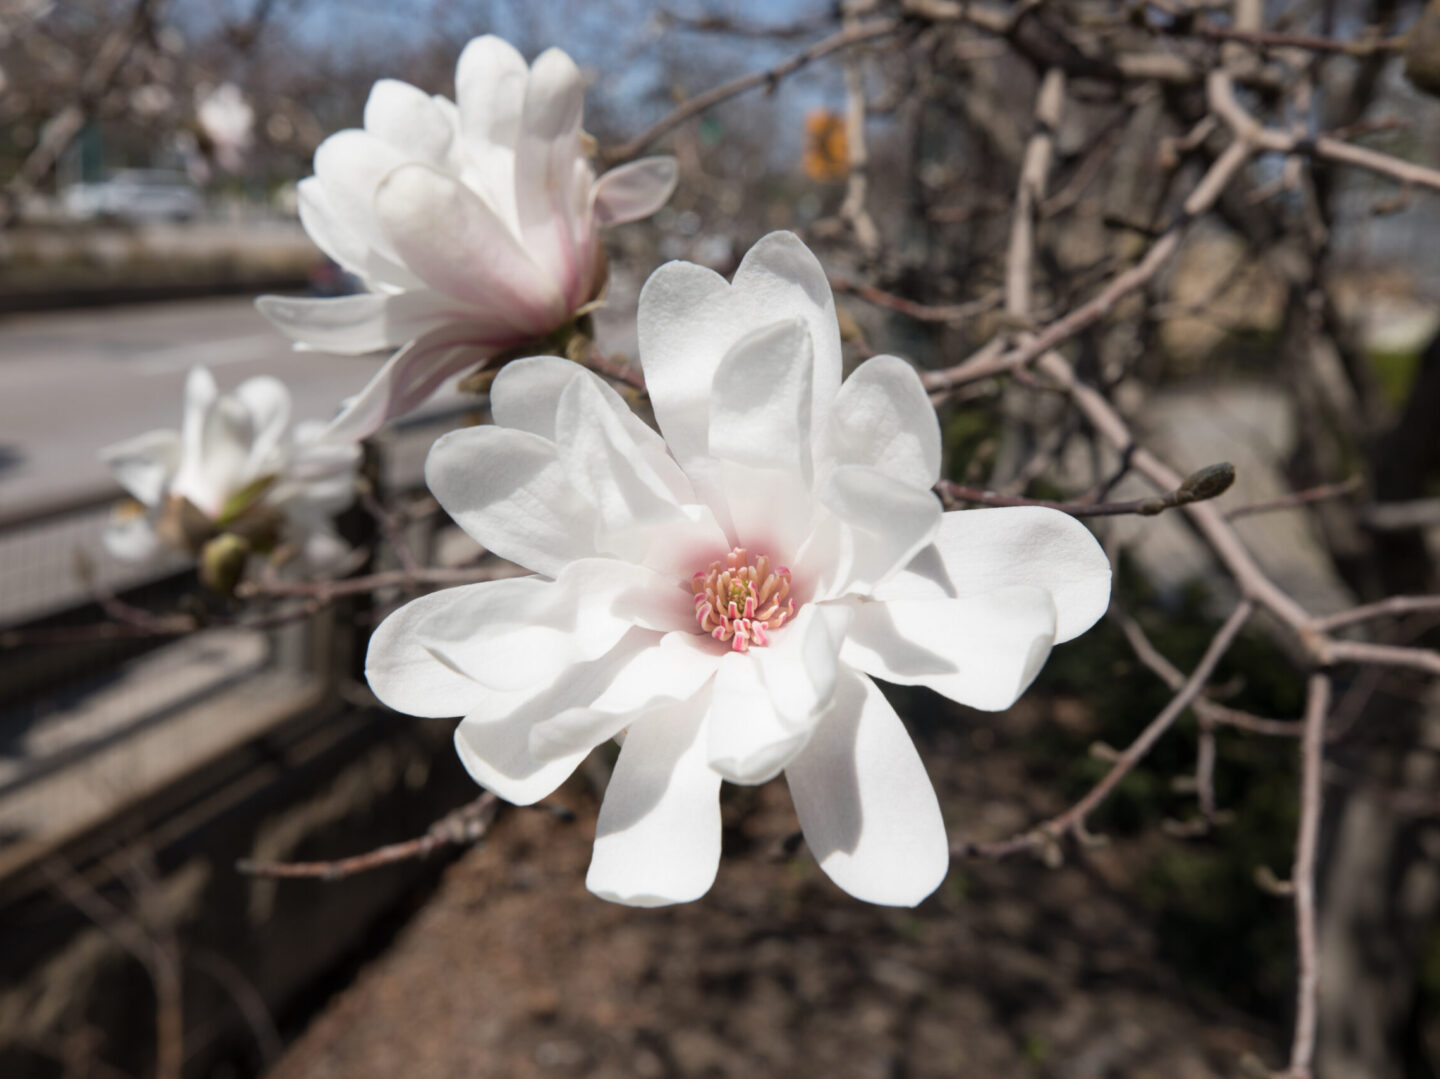 star magnolia